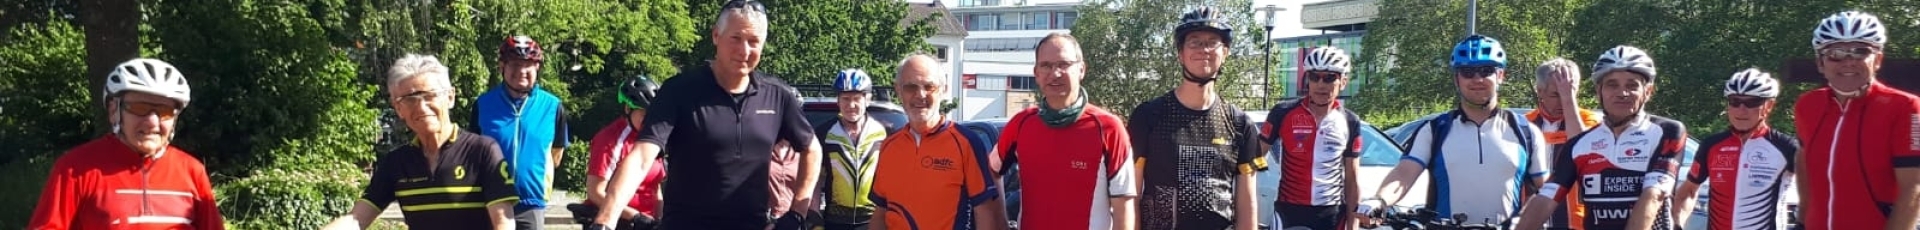 Beigeordneter Peter Kiefer (vordere Reihe, 3.v.l.) begleitete eine der organisierten Abschluss-Radtouren im Rahmen der diesjährigen Aktion Stadtradeln